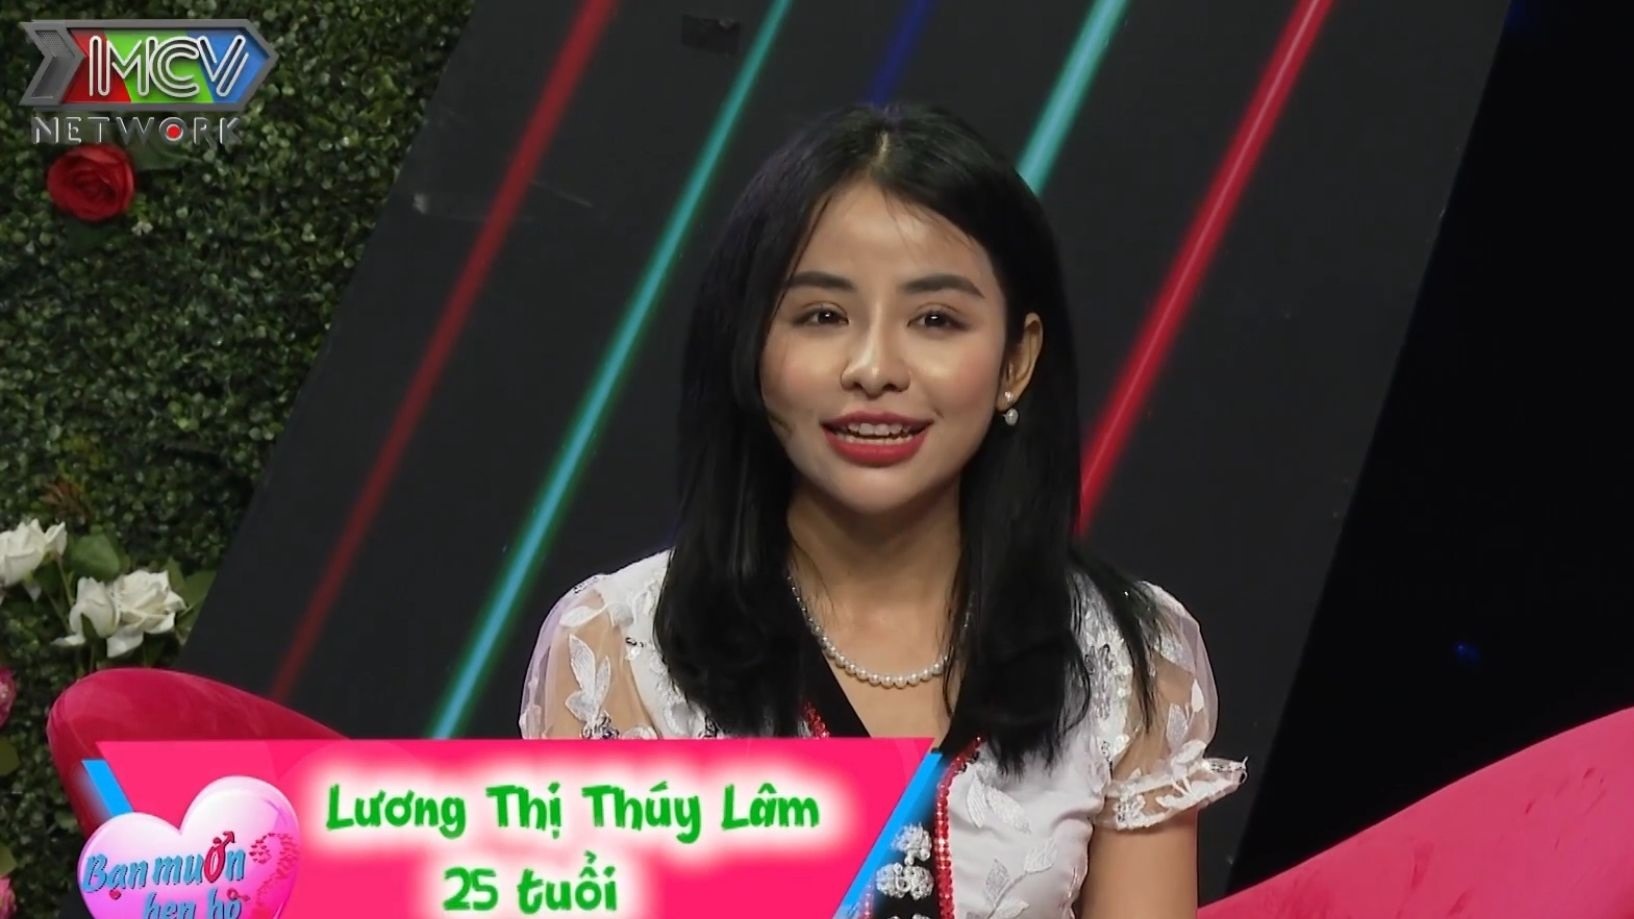 Cô gái dân tộc Thái tại chương trình. Ảnh: MCV.